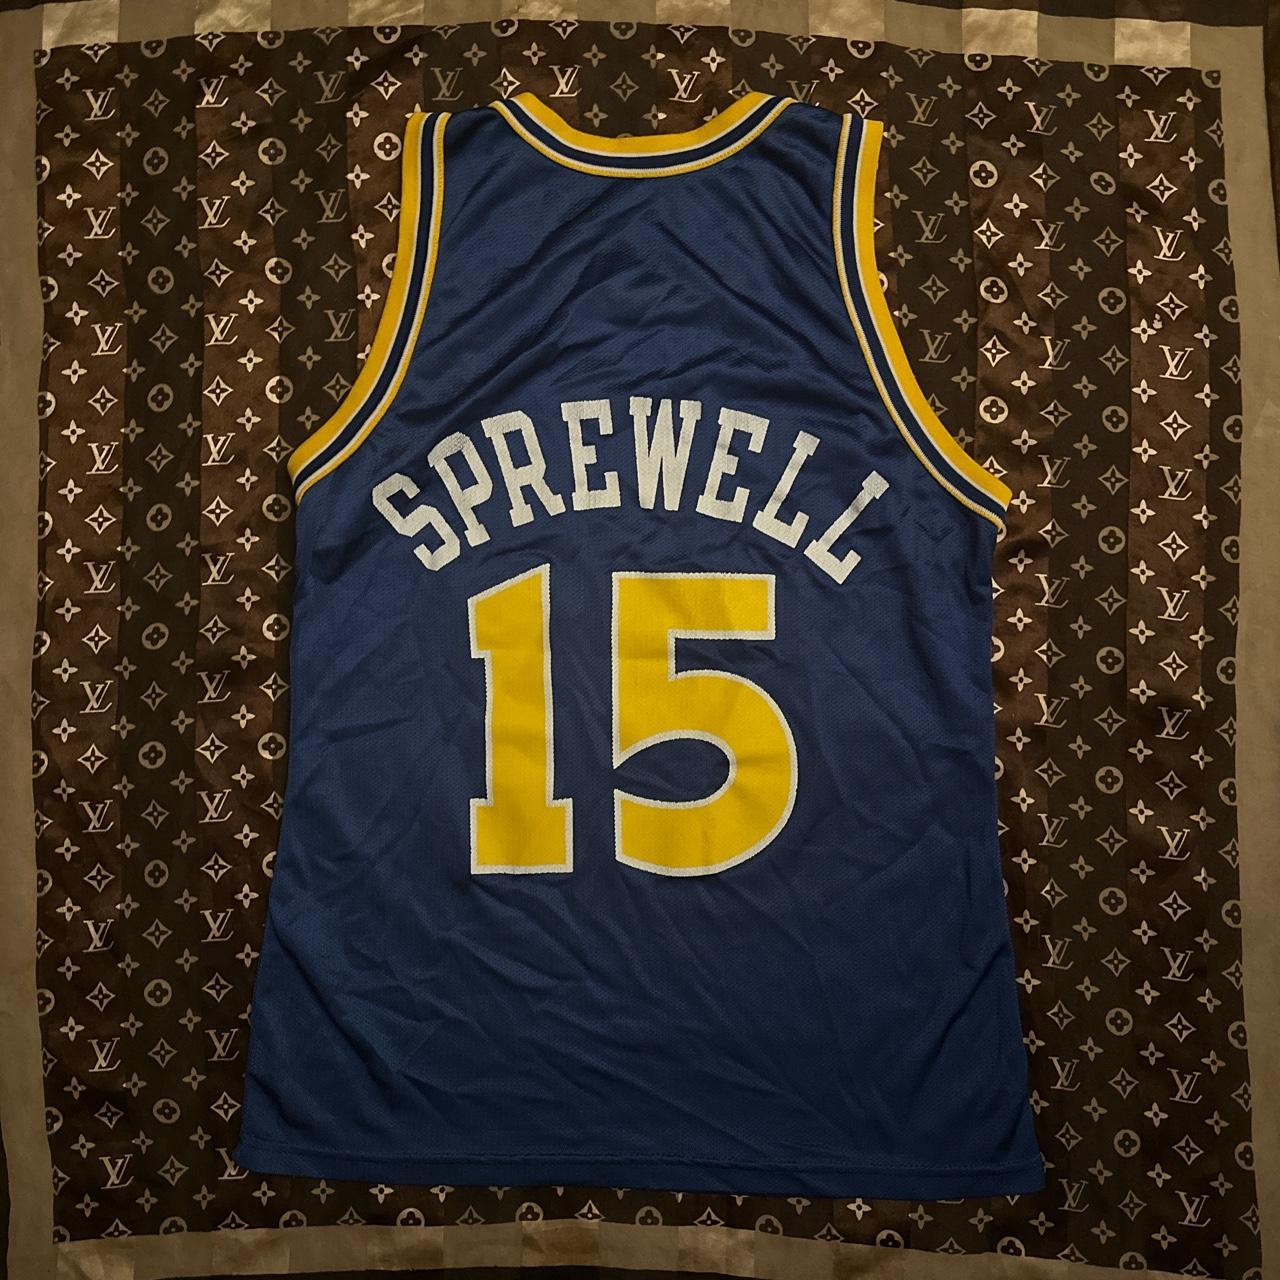 Latrell Sprewell Golden State Warriors Basketball Jersey